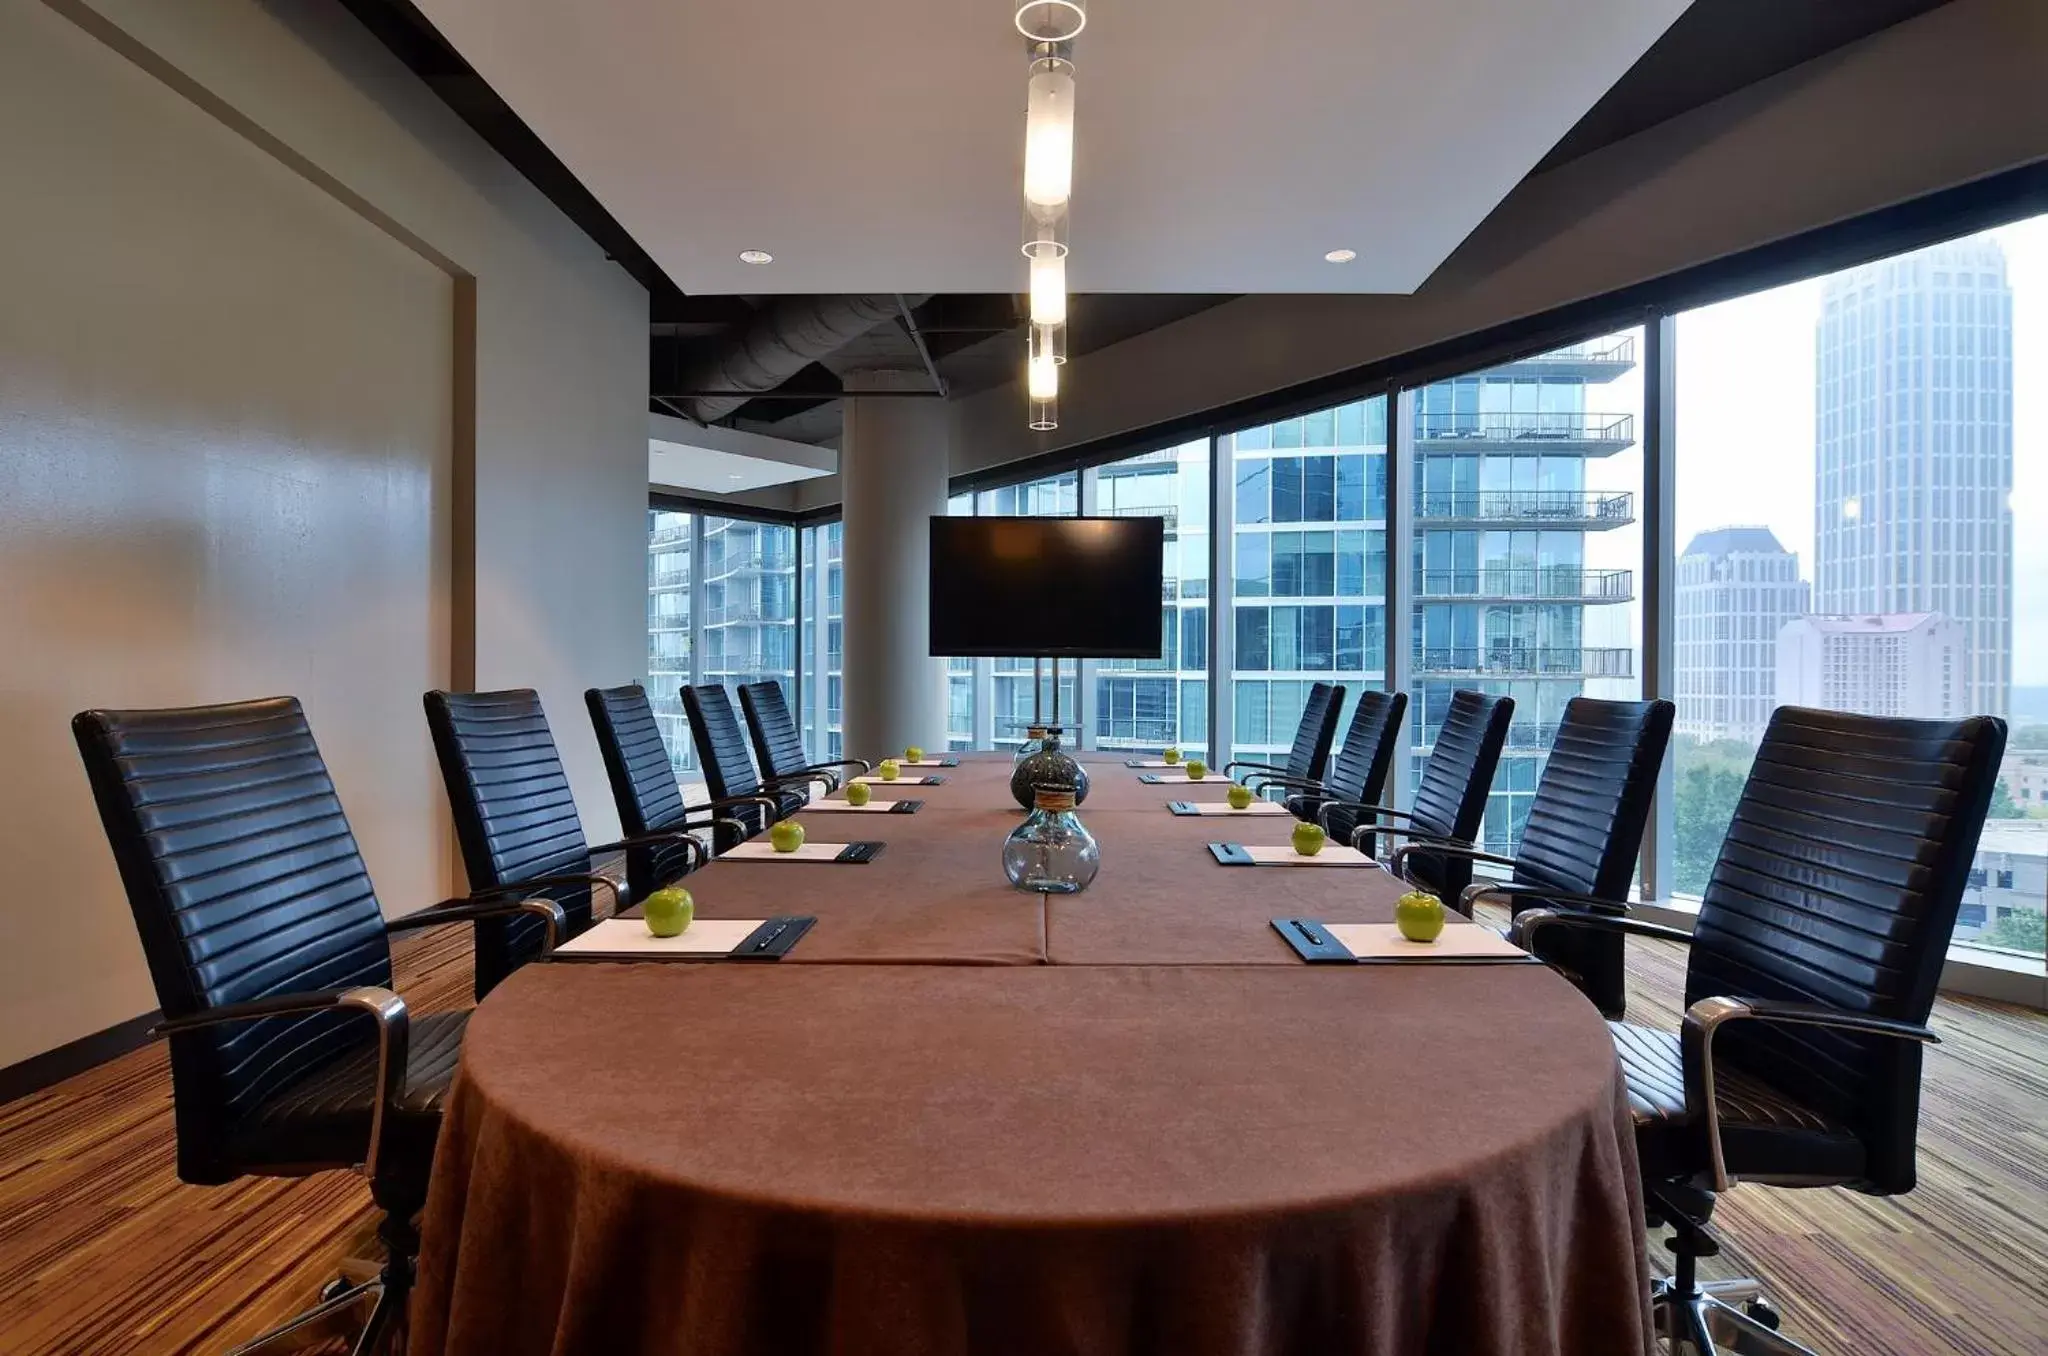 Meeting/conference room in Loews Atlanta Hotel